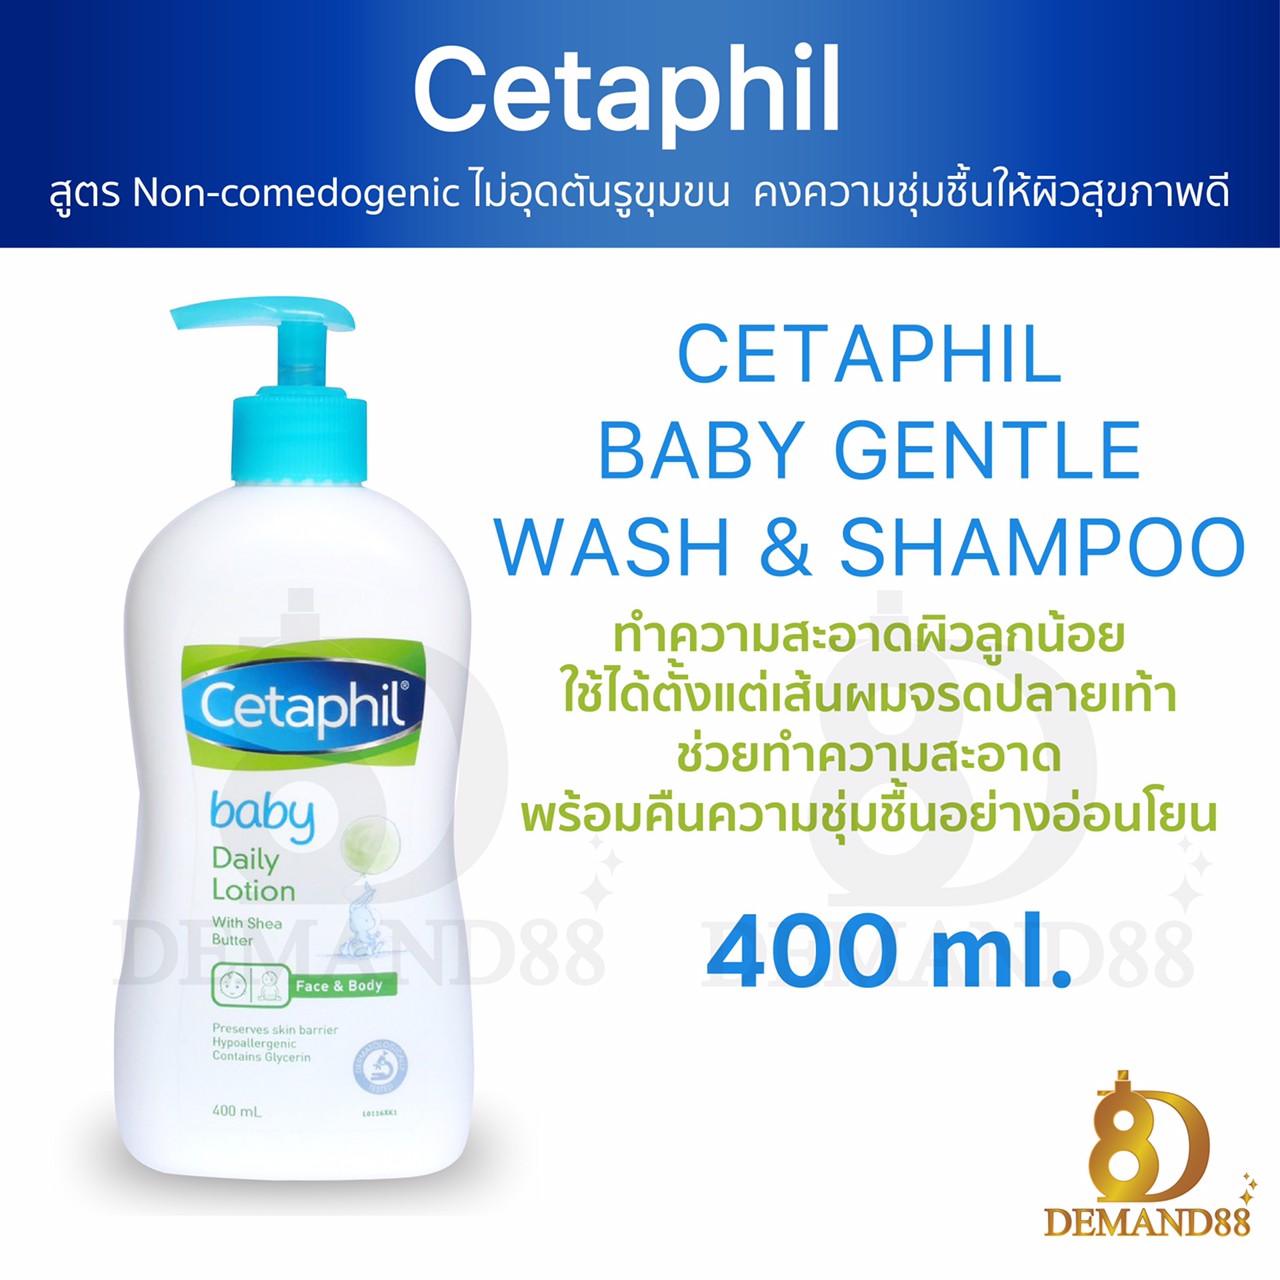 โลชั่นเด็ก เซตาฟิล Cetaphil baby daily lotion (400 ml) ครีม ครีมทาผิว โลชั่นเด็กสำหรับเด็กผิวแห้ง ผิวแพ้ง่าย อ่อนโยนต่อผิว ช่วยในการสร้างเกราะป้องกันผิวที่แข็งแรง  ปลอดภัยใช้ได้ตั้งแต่วัยแรกเกิด